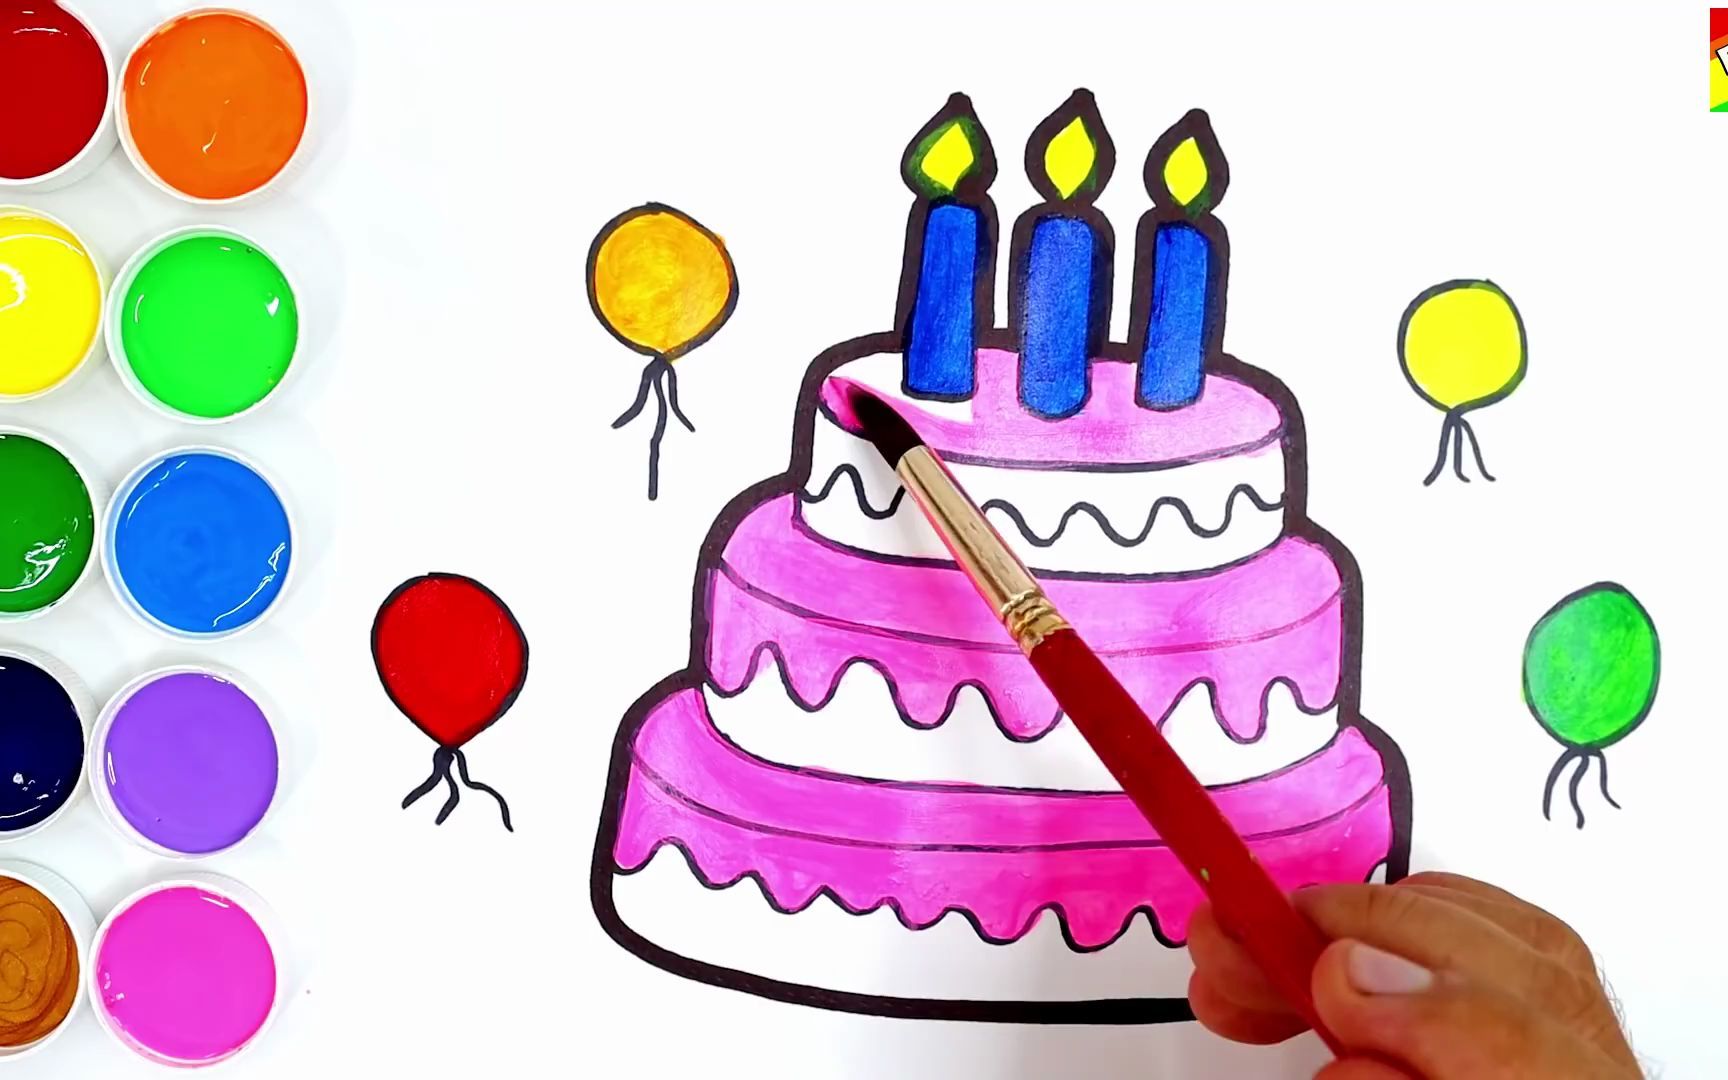 【简笔水彩画】教你画生日蛋糕然后上色~超级简单的绘画,一看就会!